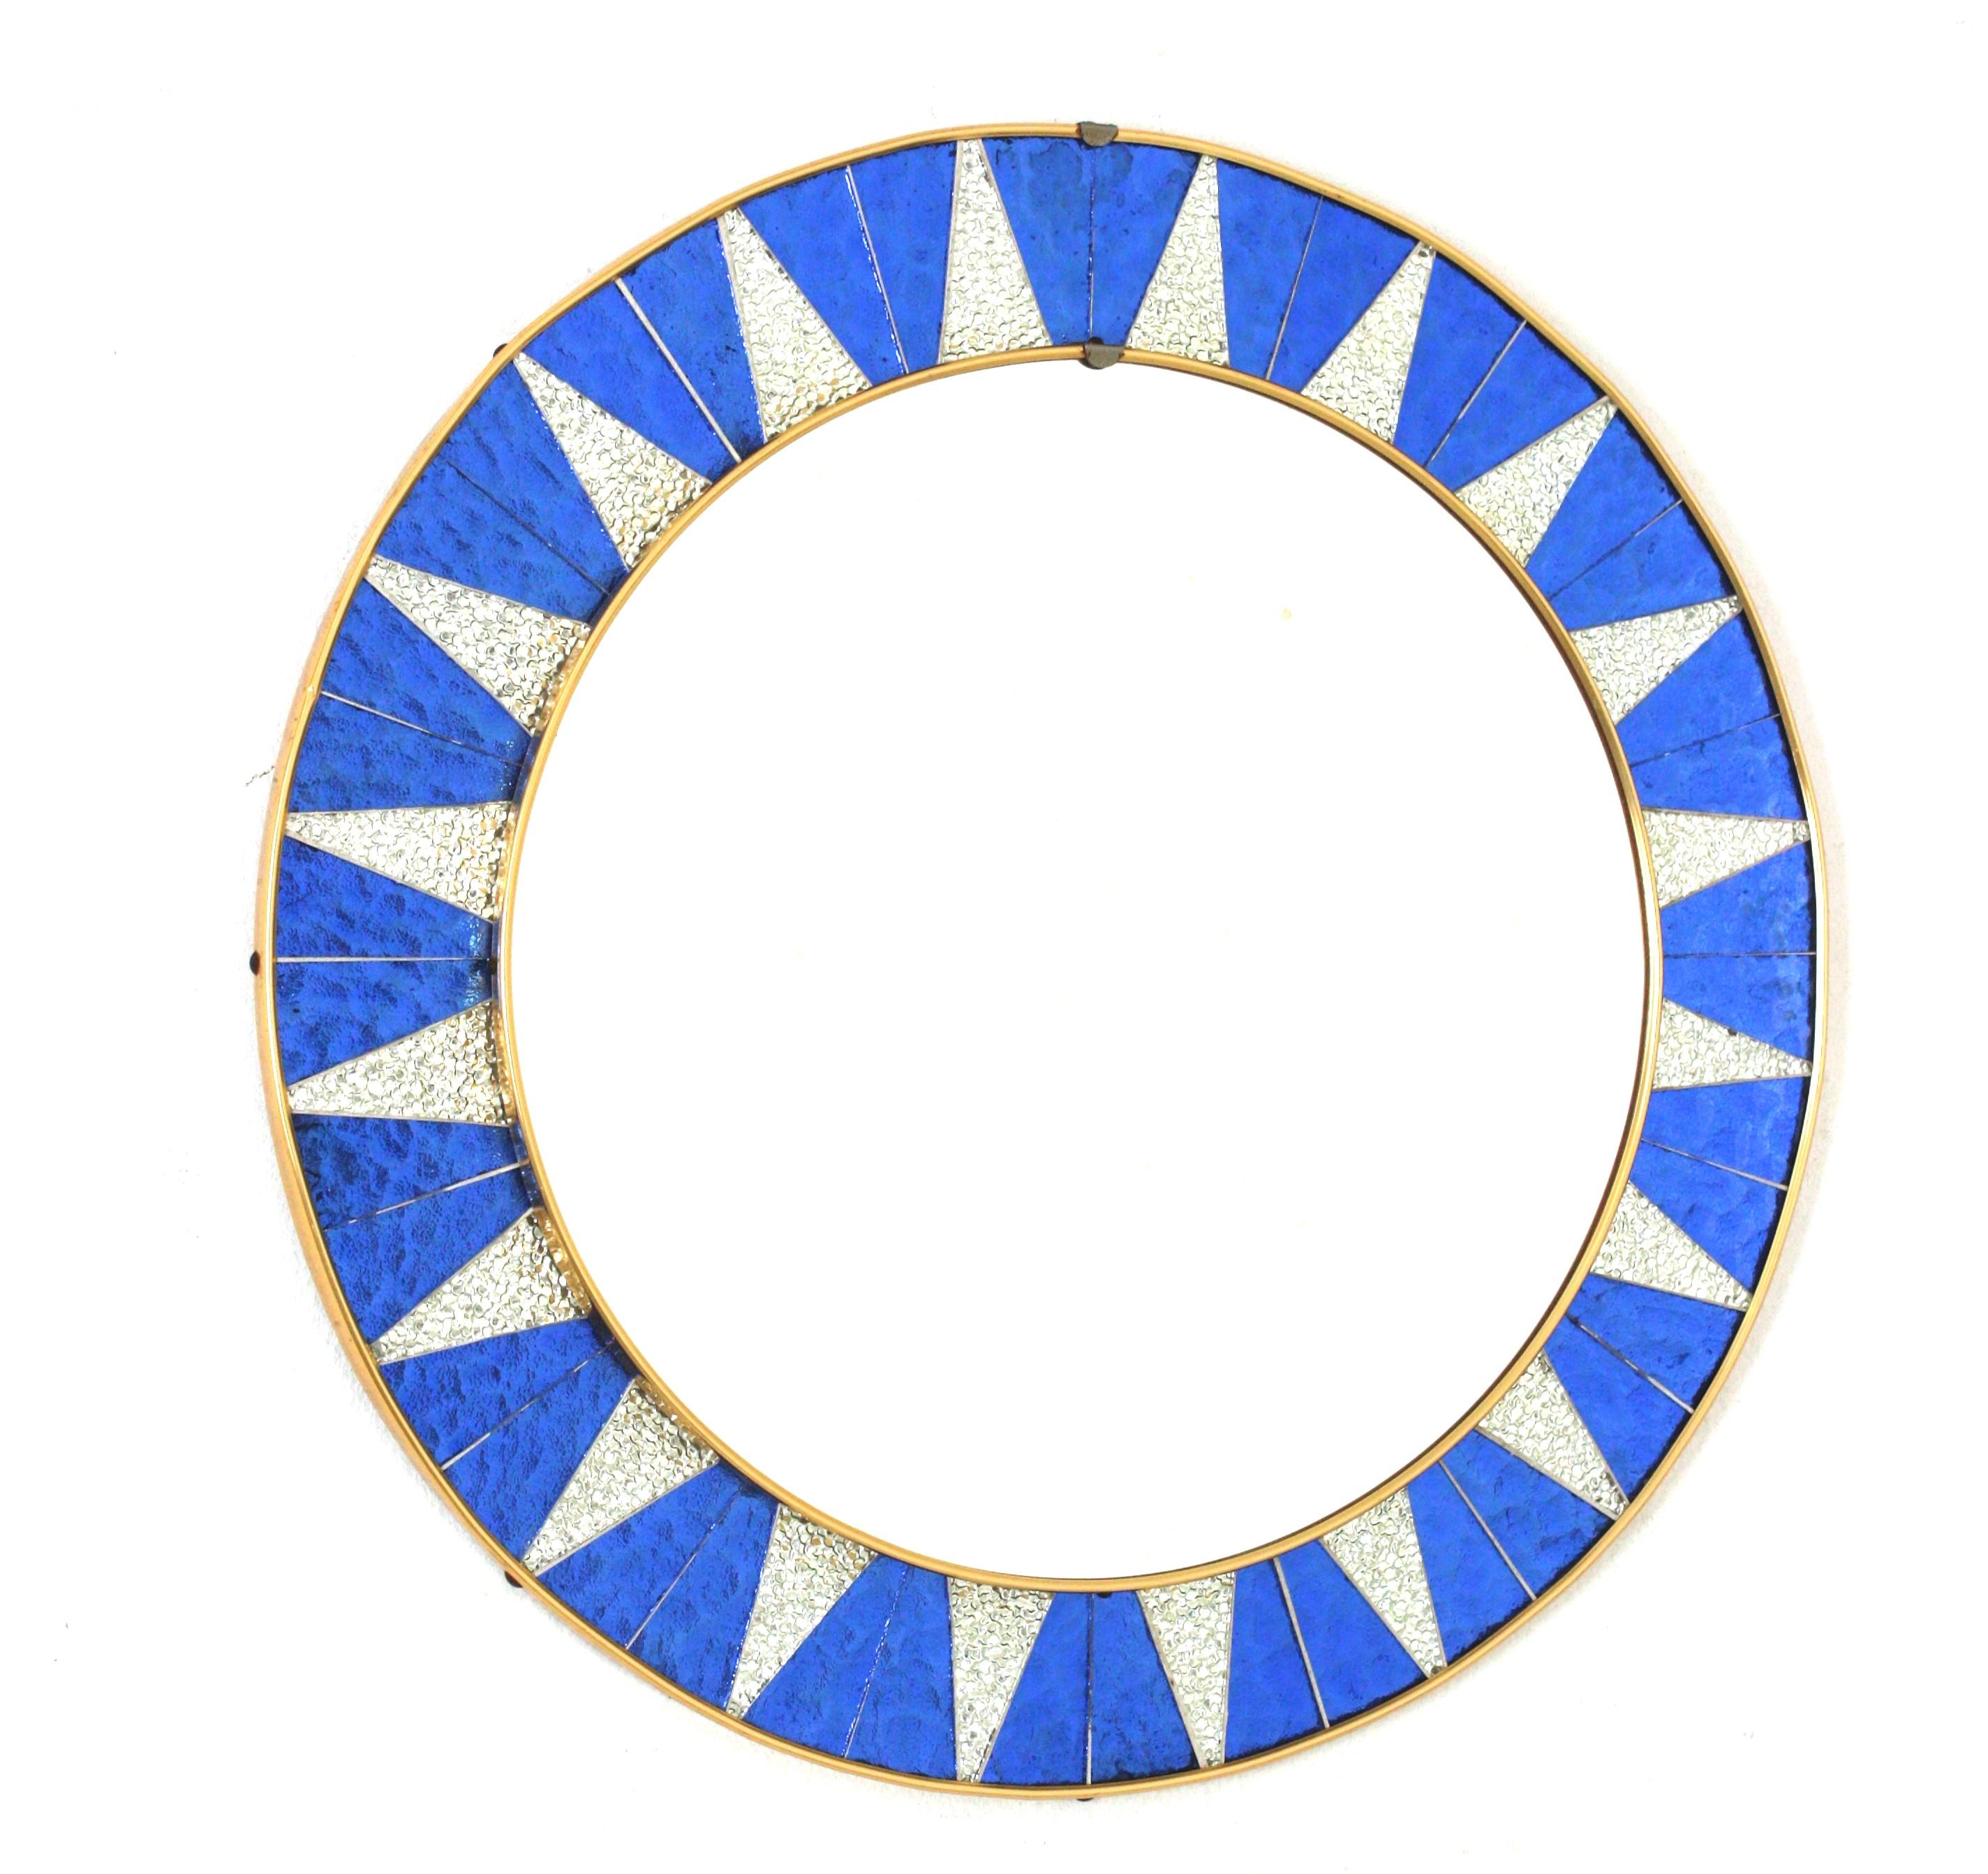 Midcentury Round Sunburst Mosaic Mirror, 
Ein sehr dekorativer runder Spiegel aus der Mitte des Jahrhunderts mit einem Rahmen, der aus Stücken von strukturiertem Glas, versilberten Spiegeln und irisierenden blauen Gläsern besteht, die so verteilt